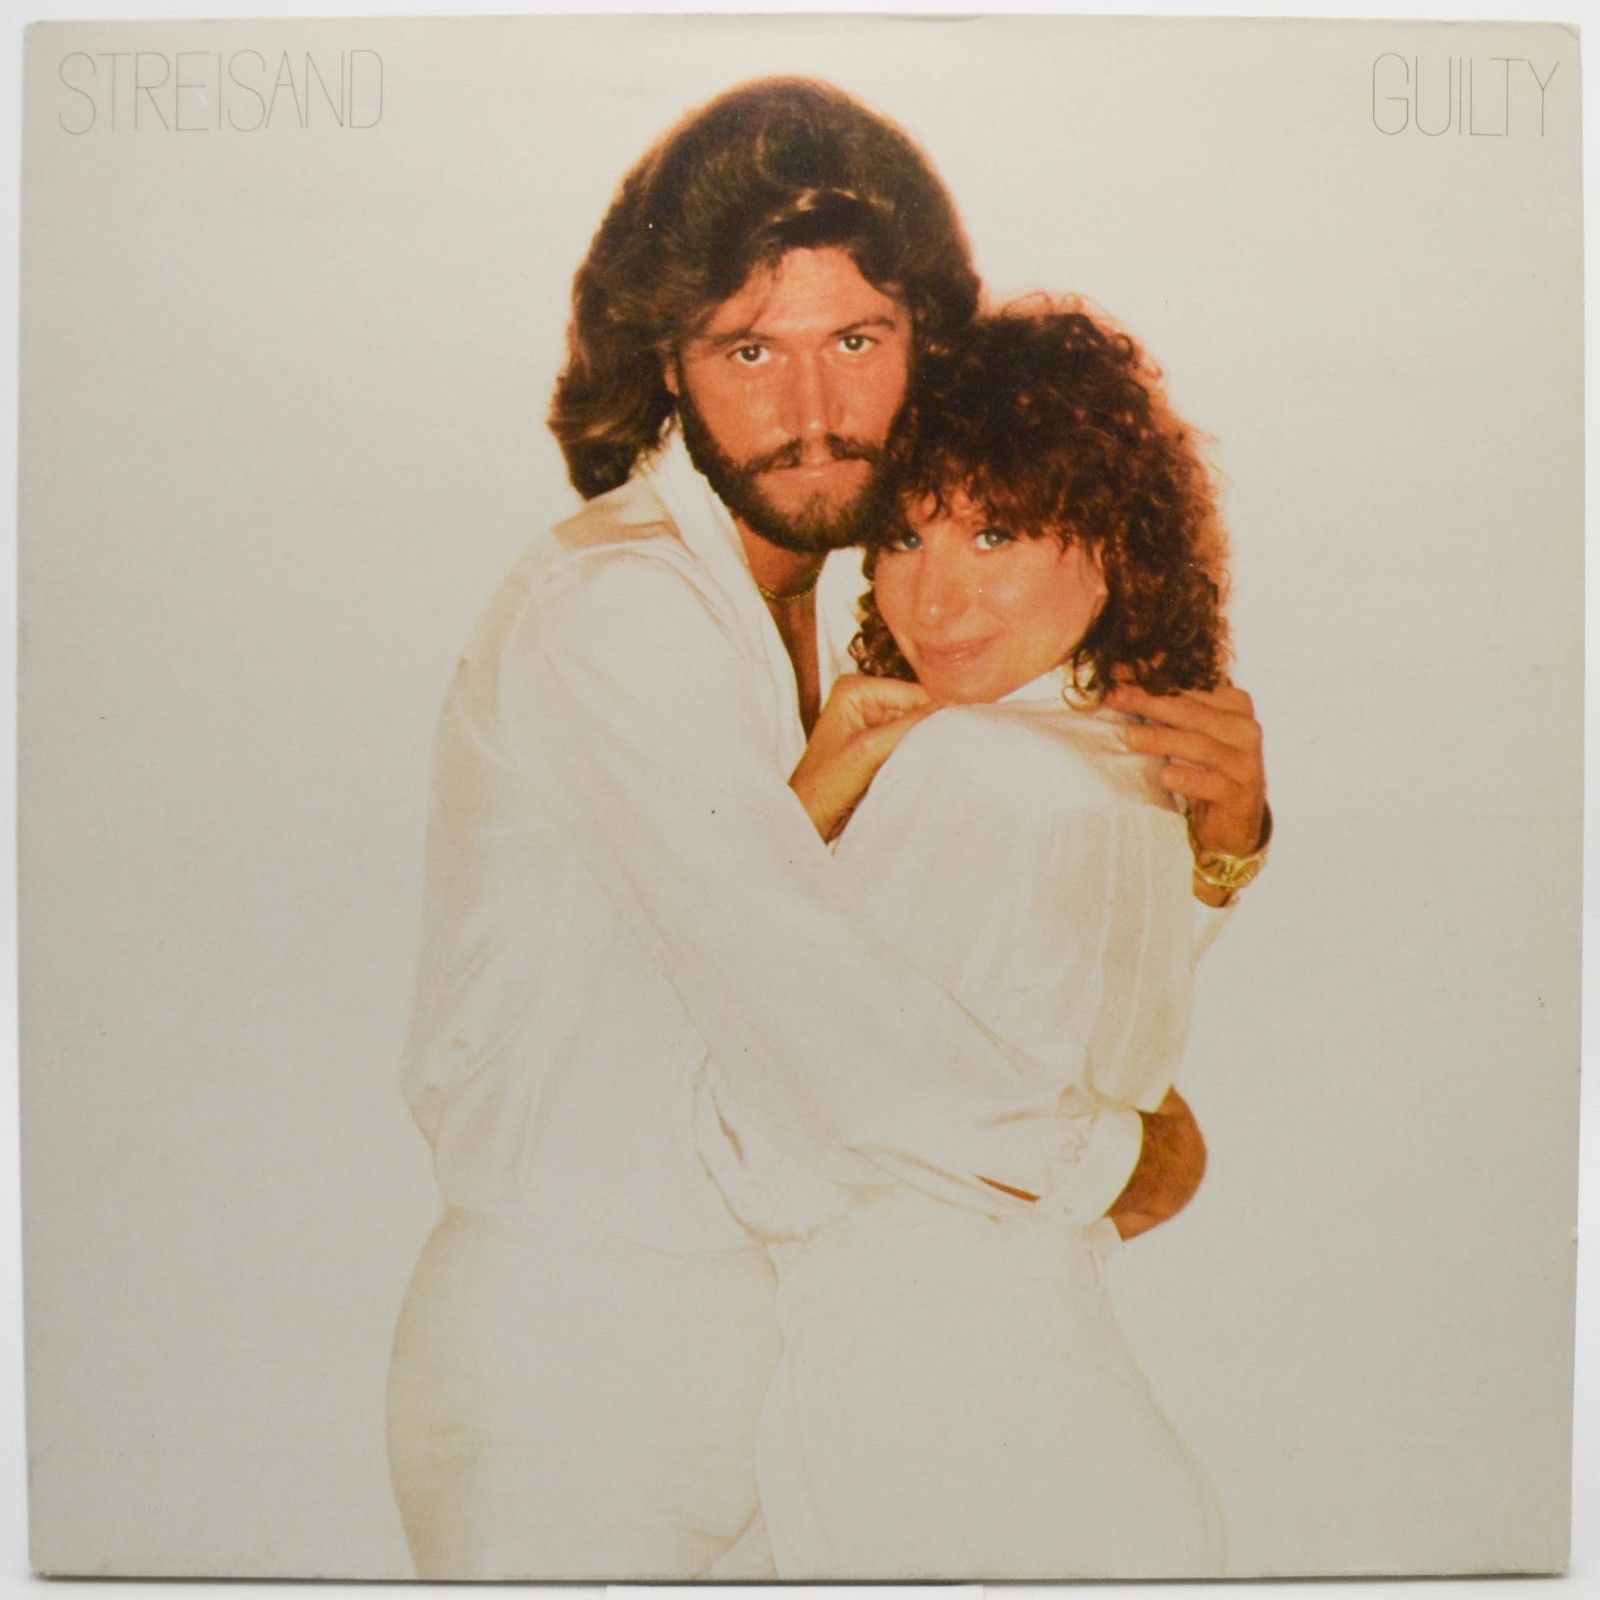 Barbra Streisand — Guilty, 1980